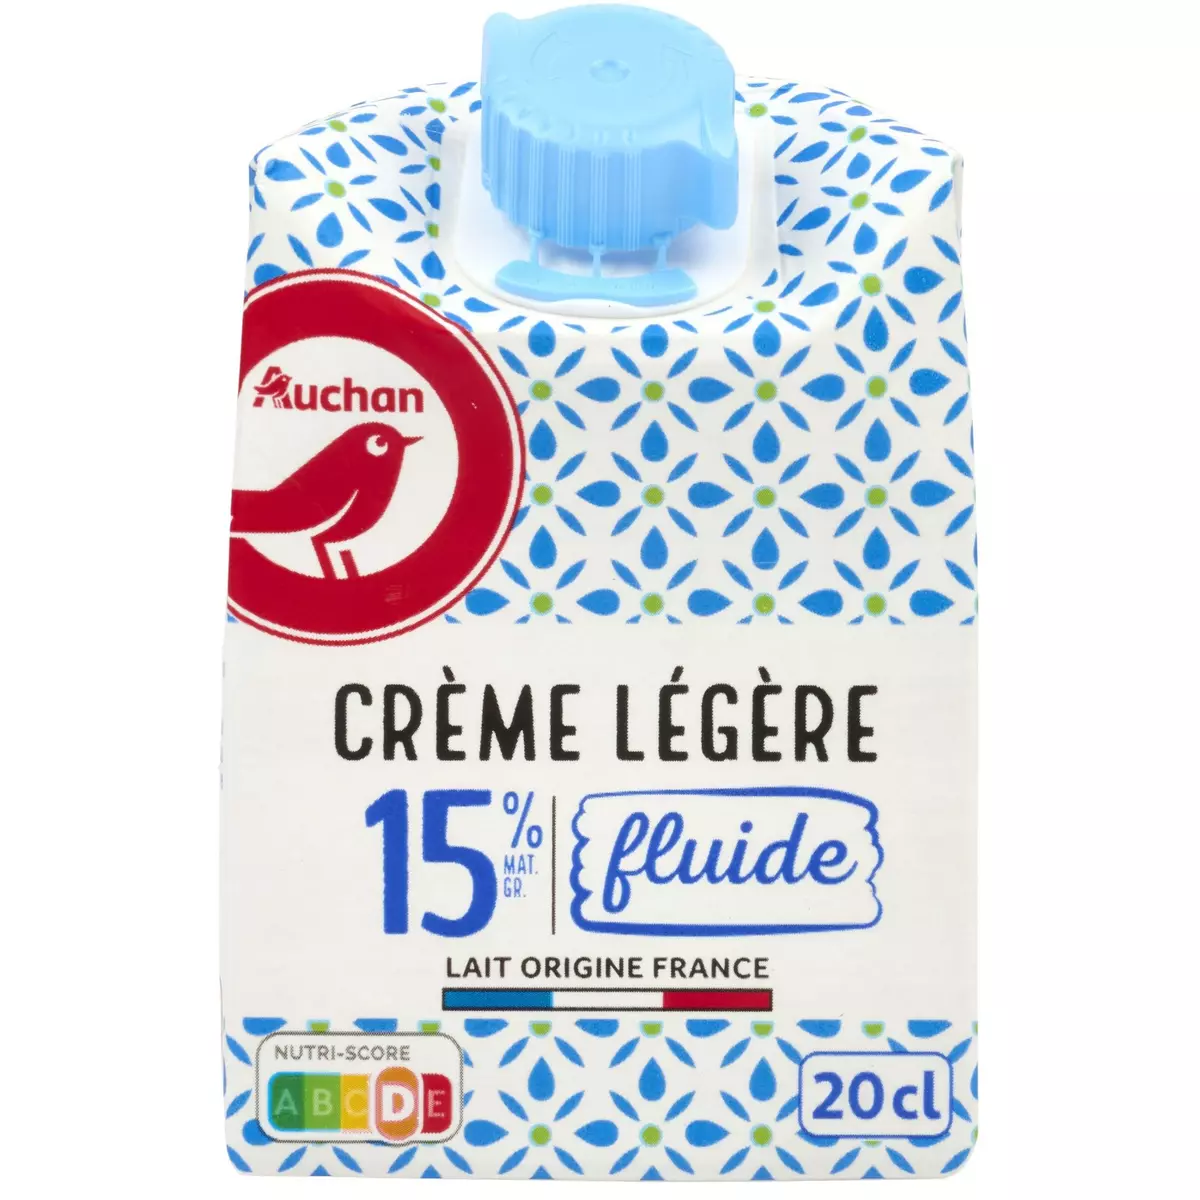 AUCHAN Crème légère fluide 15%MG 20cl